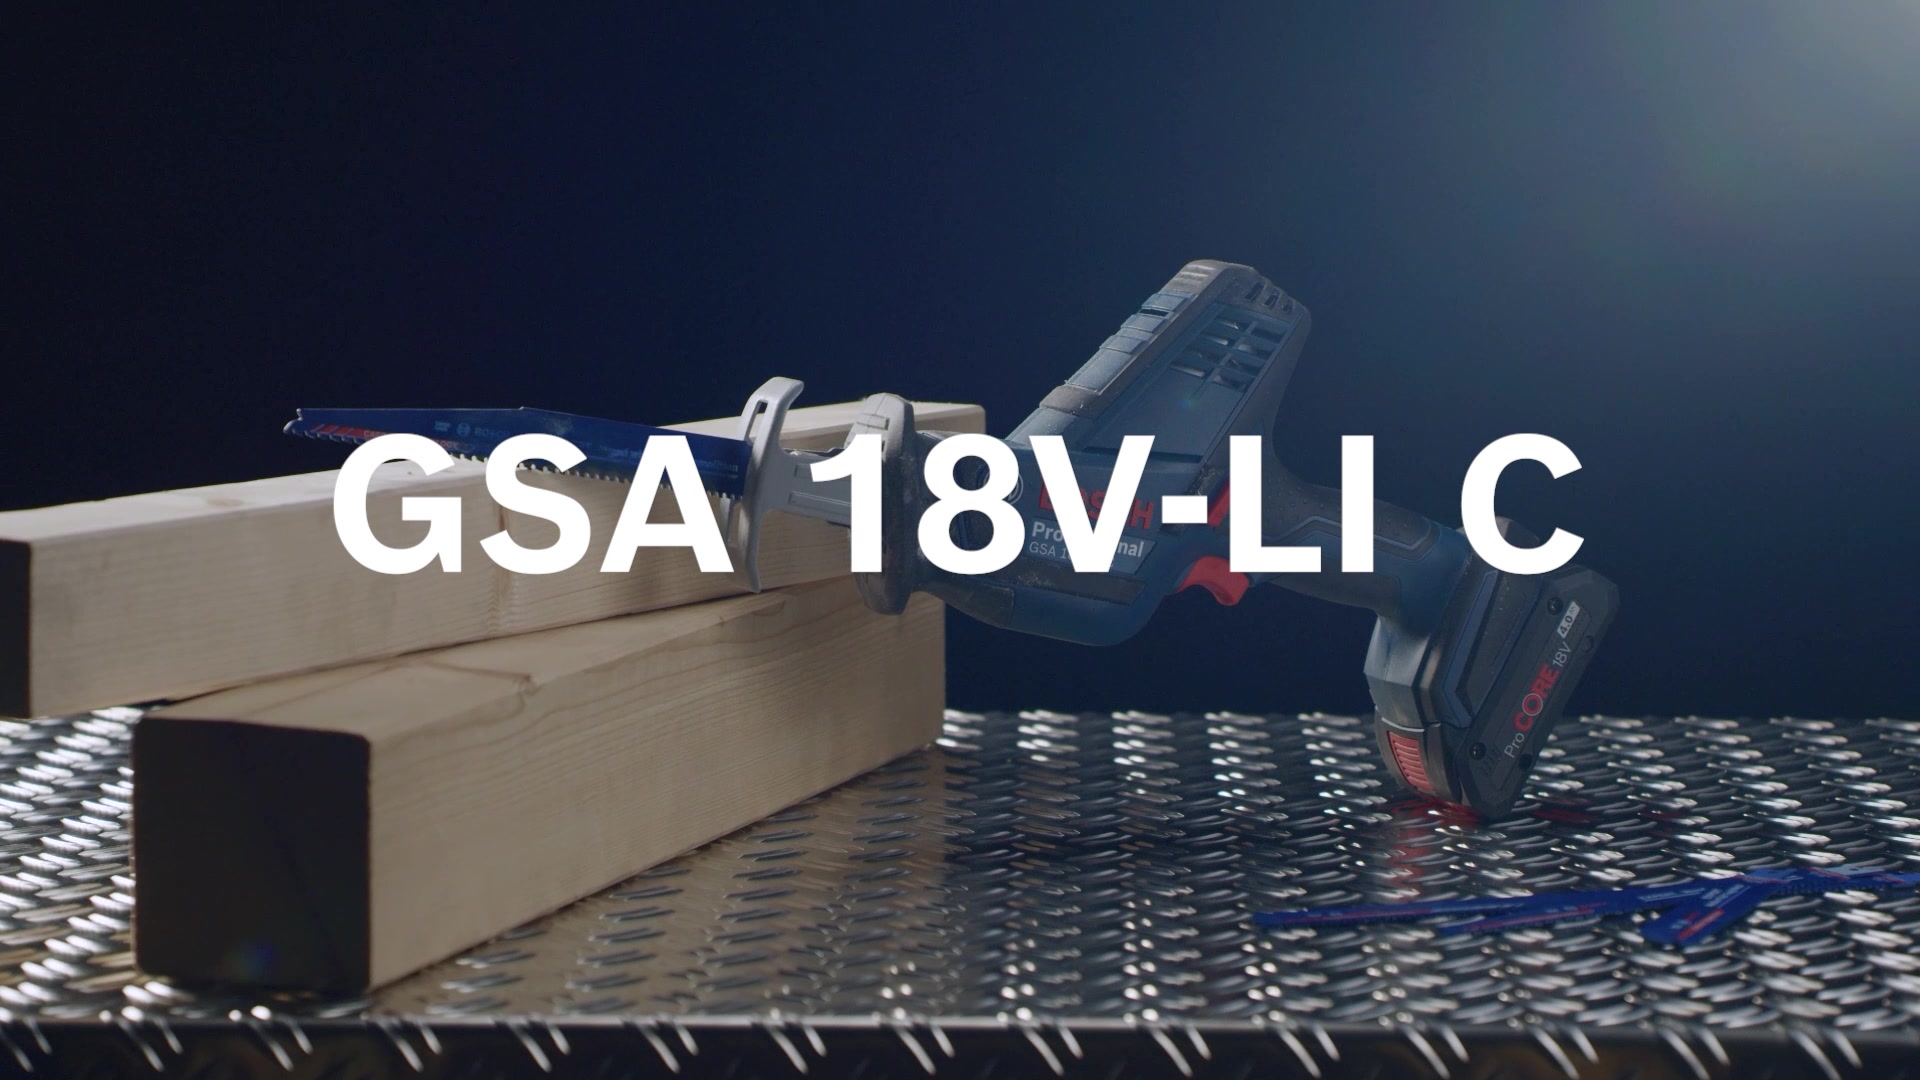 GSA 18V-LI C